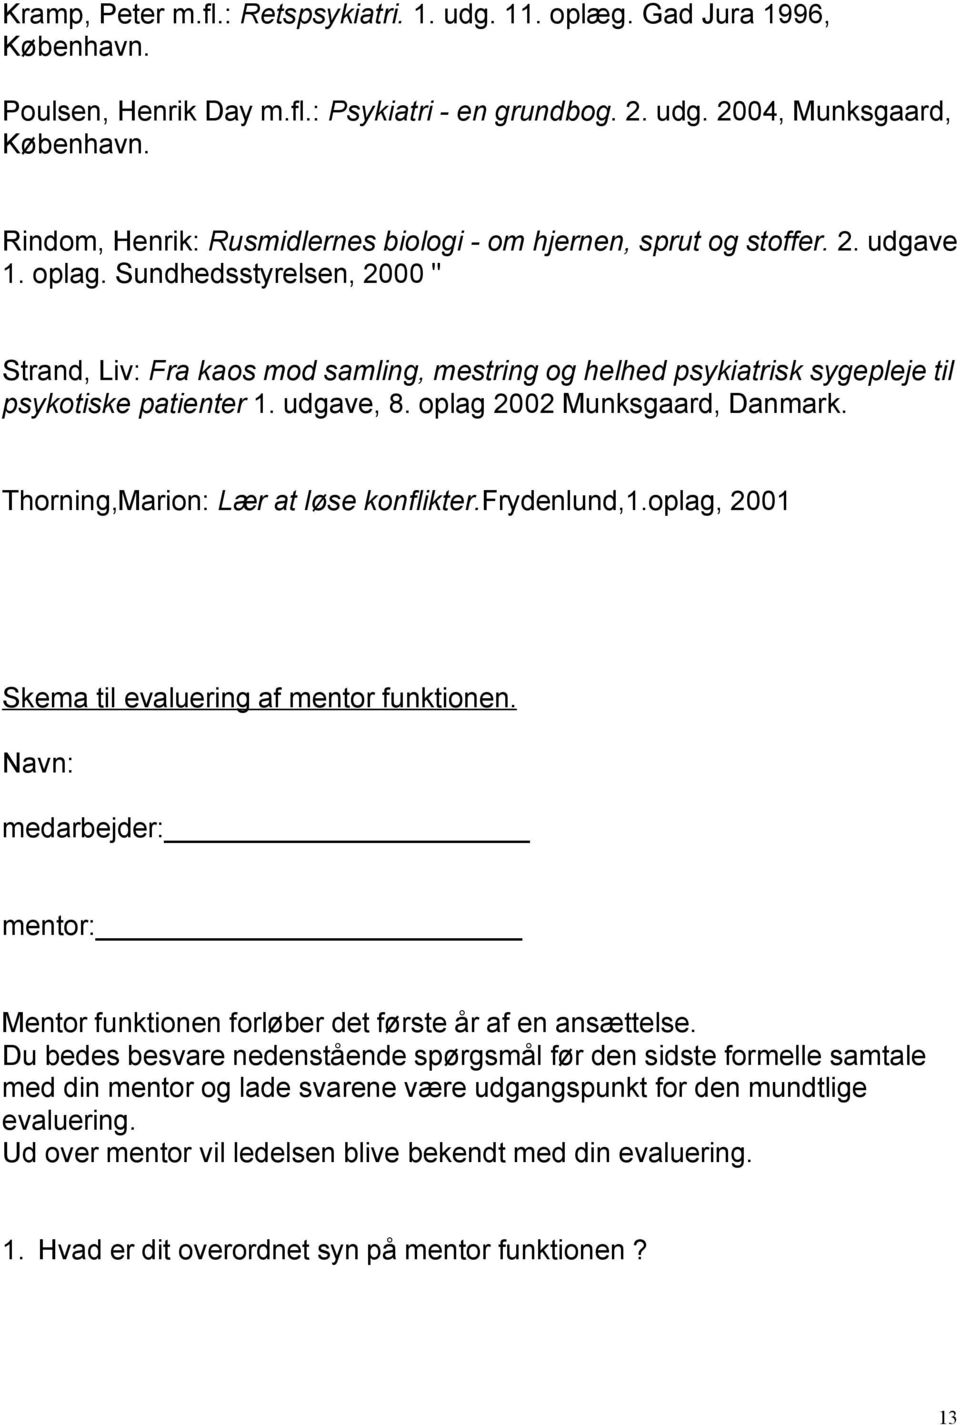 Sundhedsstyrelsen, 2000 " Strand, Liv: Fra kaos mod samling, mestring og helhed psykiatrisk sygepleje til psykotiske patienter 1. udgave, 8. oplag 2002 Munksgaard, Danmark.